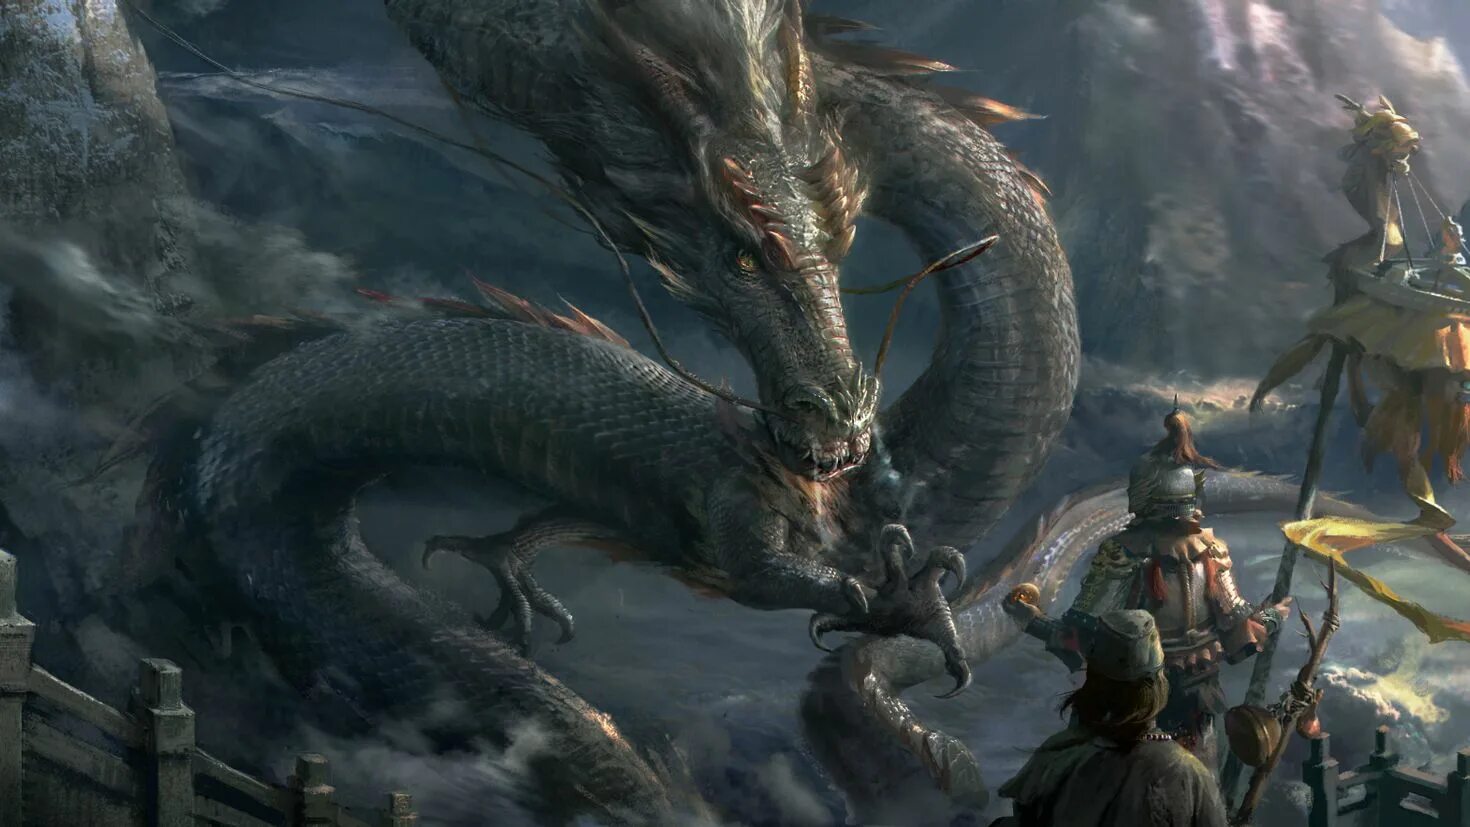 Драконы высокого качества. Имуги корейский дракон Легенда. Химера Имуги. Зеленый дракон Имуги.